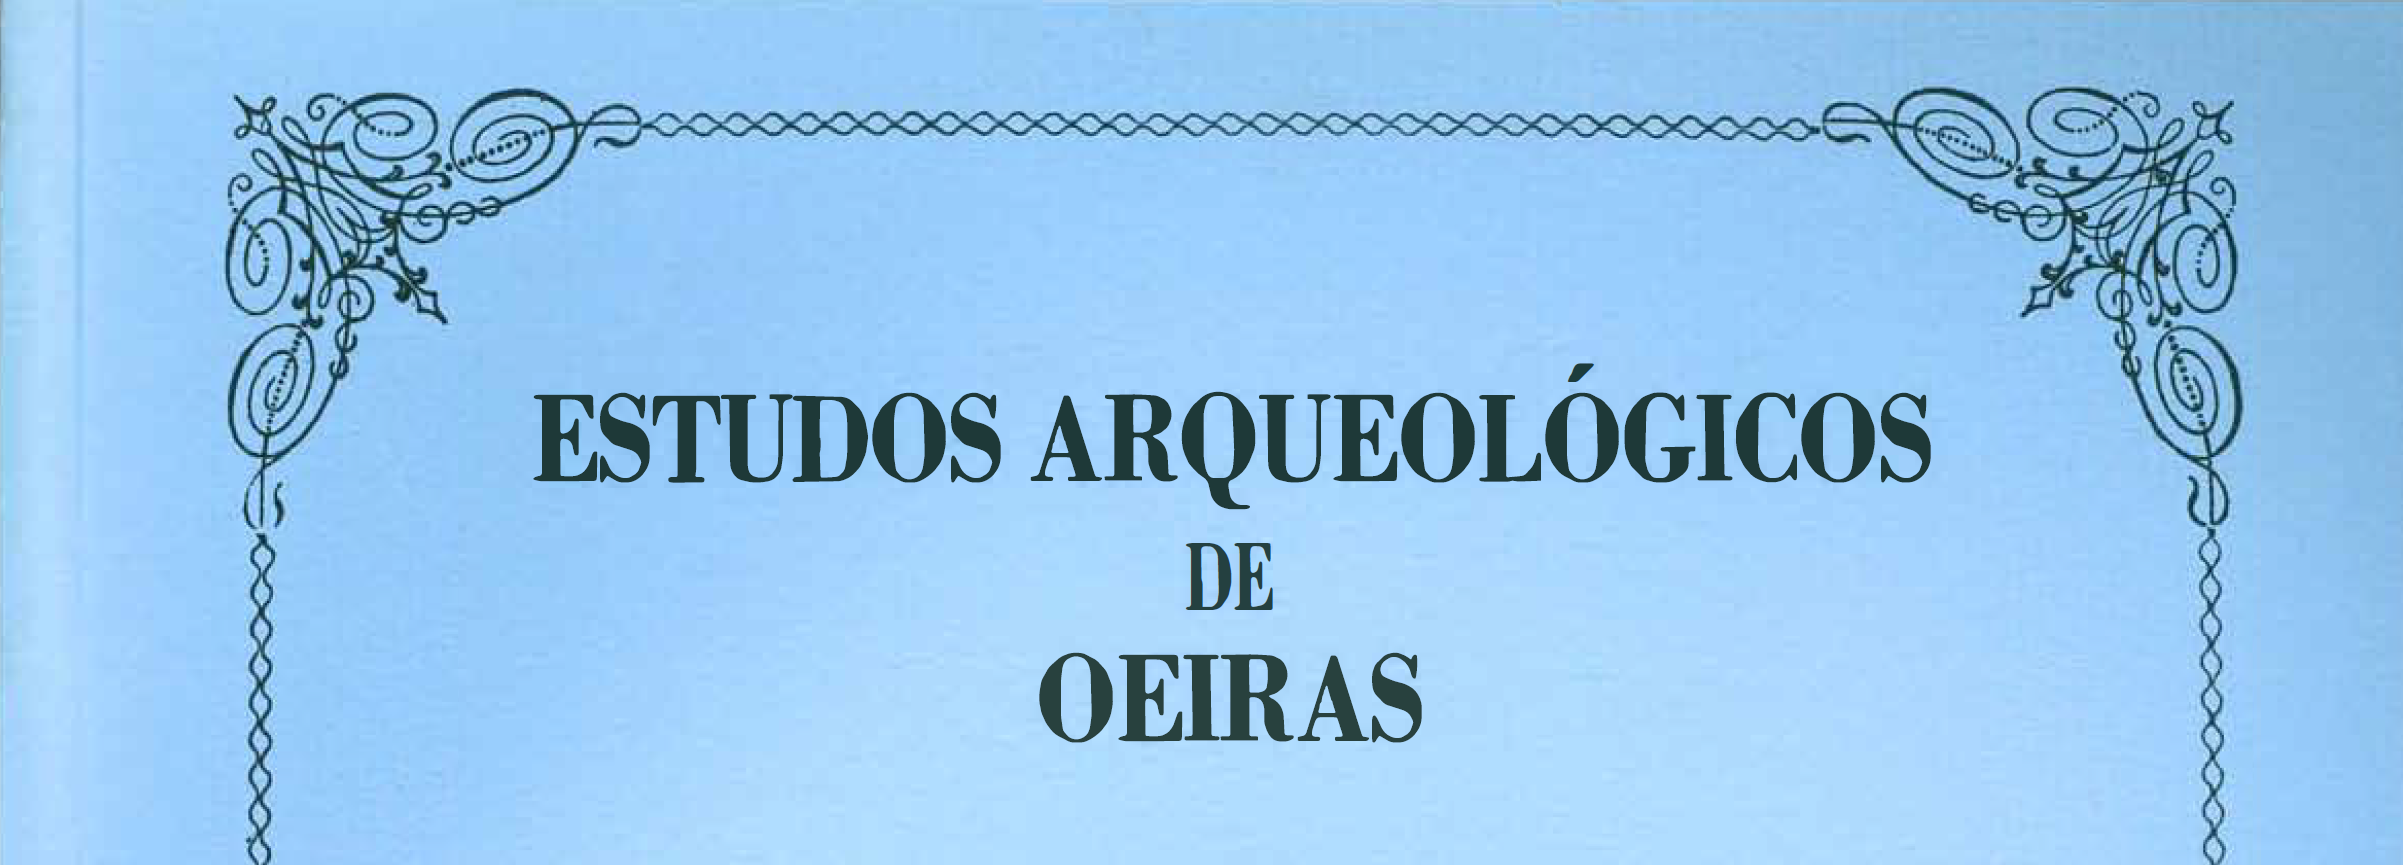 Estudos Arqueológicos de Oeiras, 3